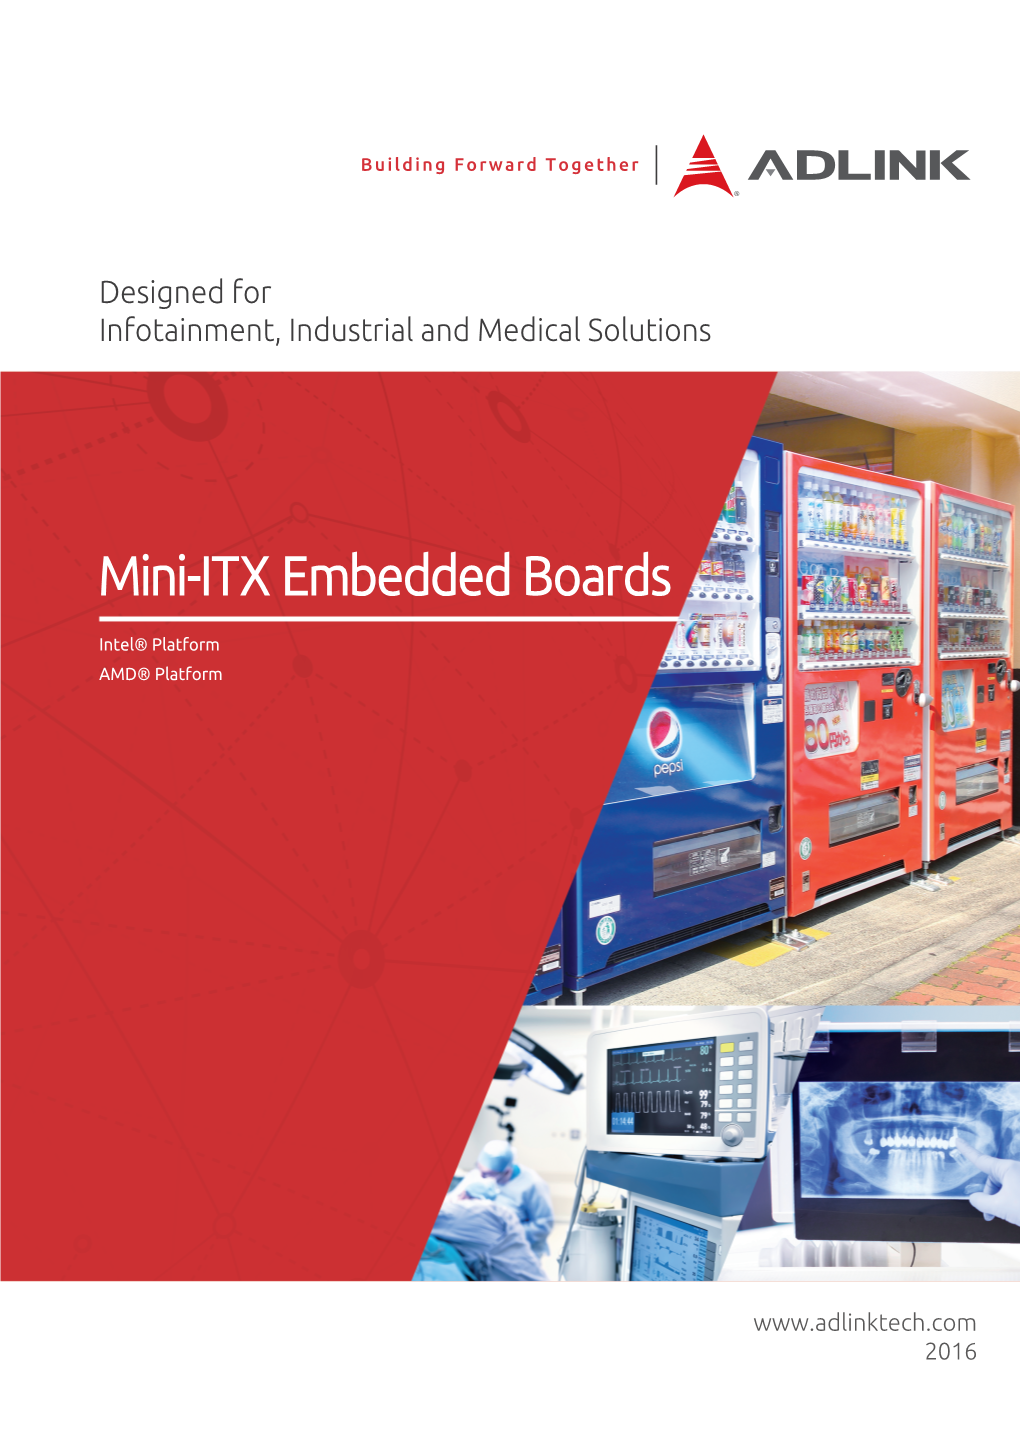 Mini-ITX Embedded Boards